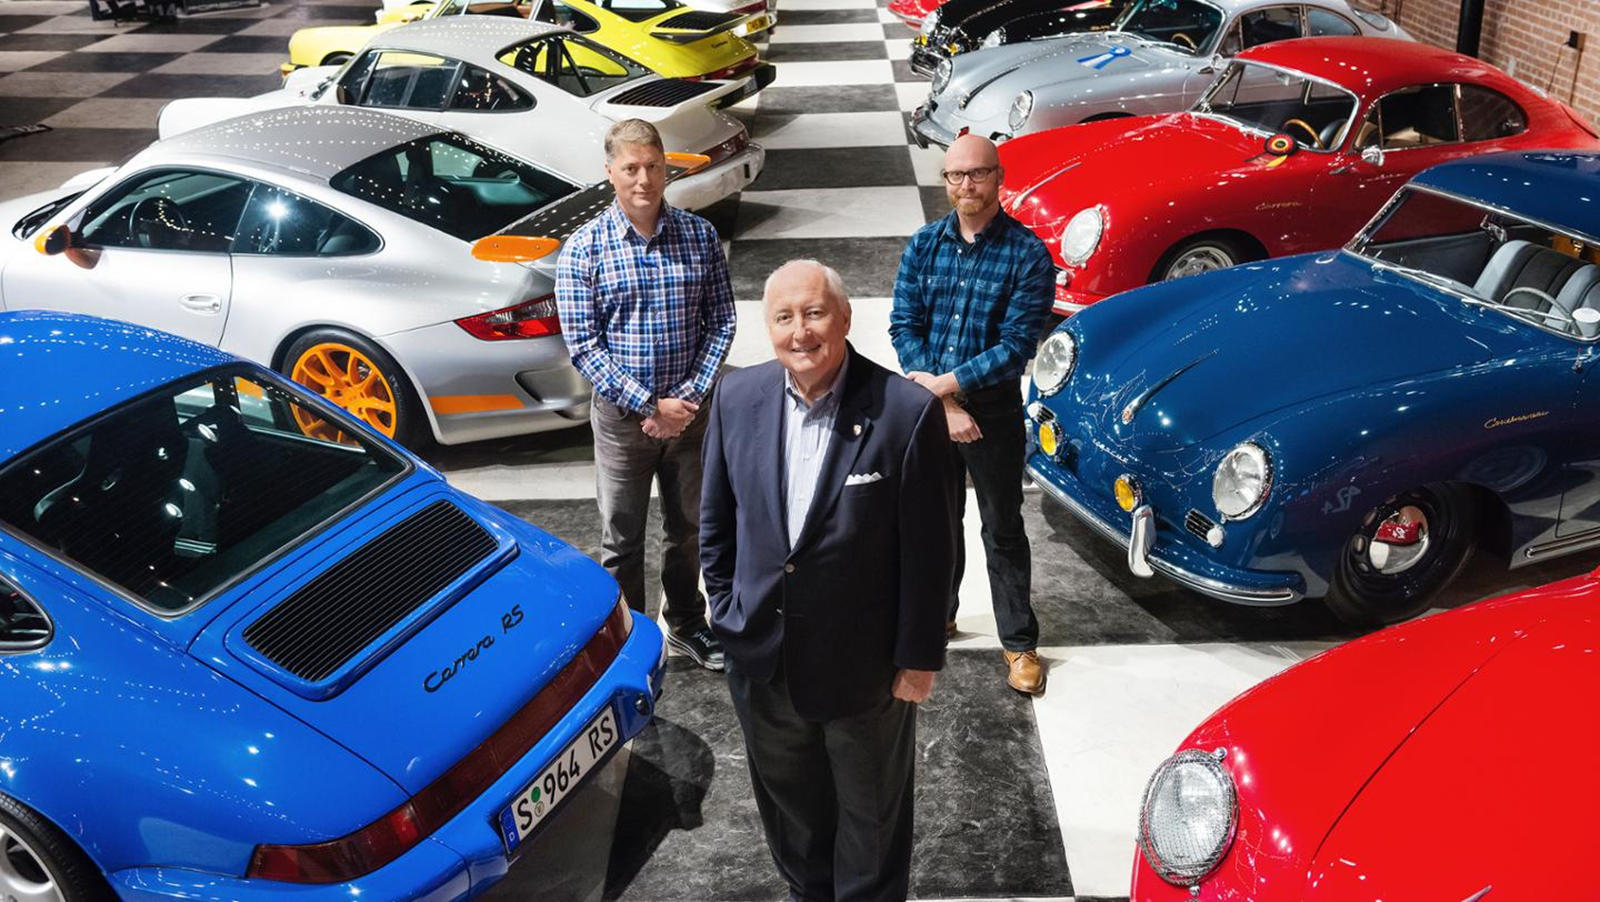 Bộ sưu tập xe Porsche đắt giá nhất thế giới vừa bị thiêu rụi